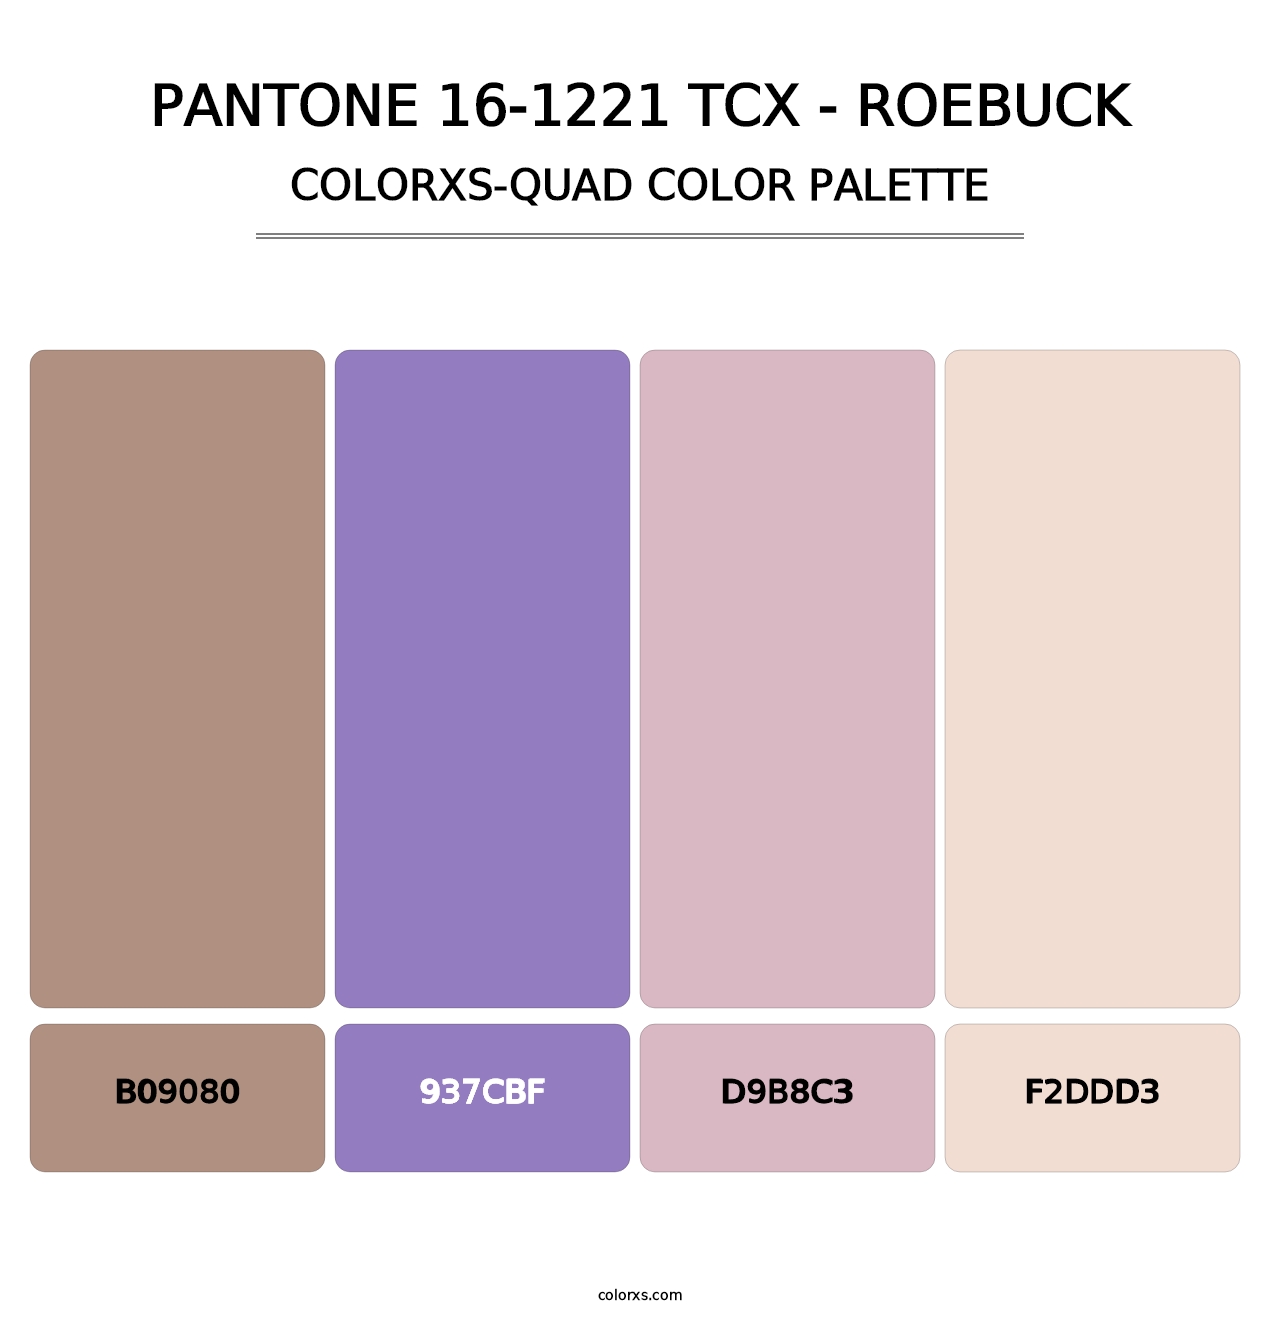 PANTONE 16-1221 TCX - Roebuck - Colorxs Quad Palette